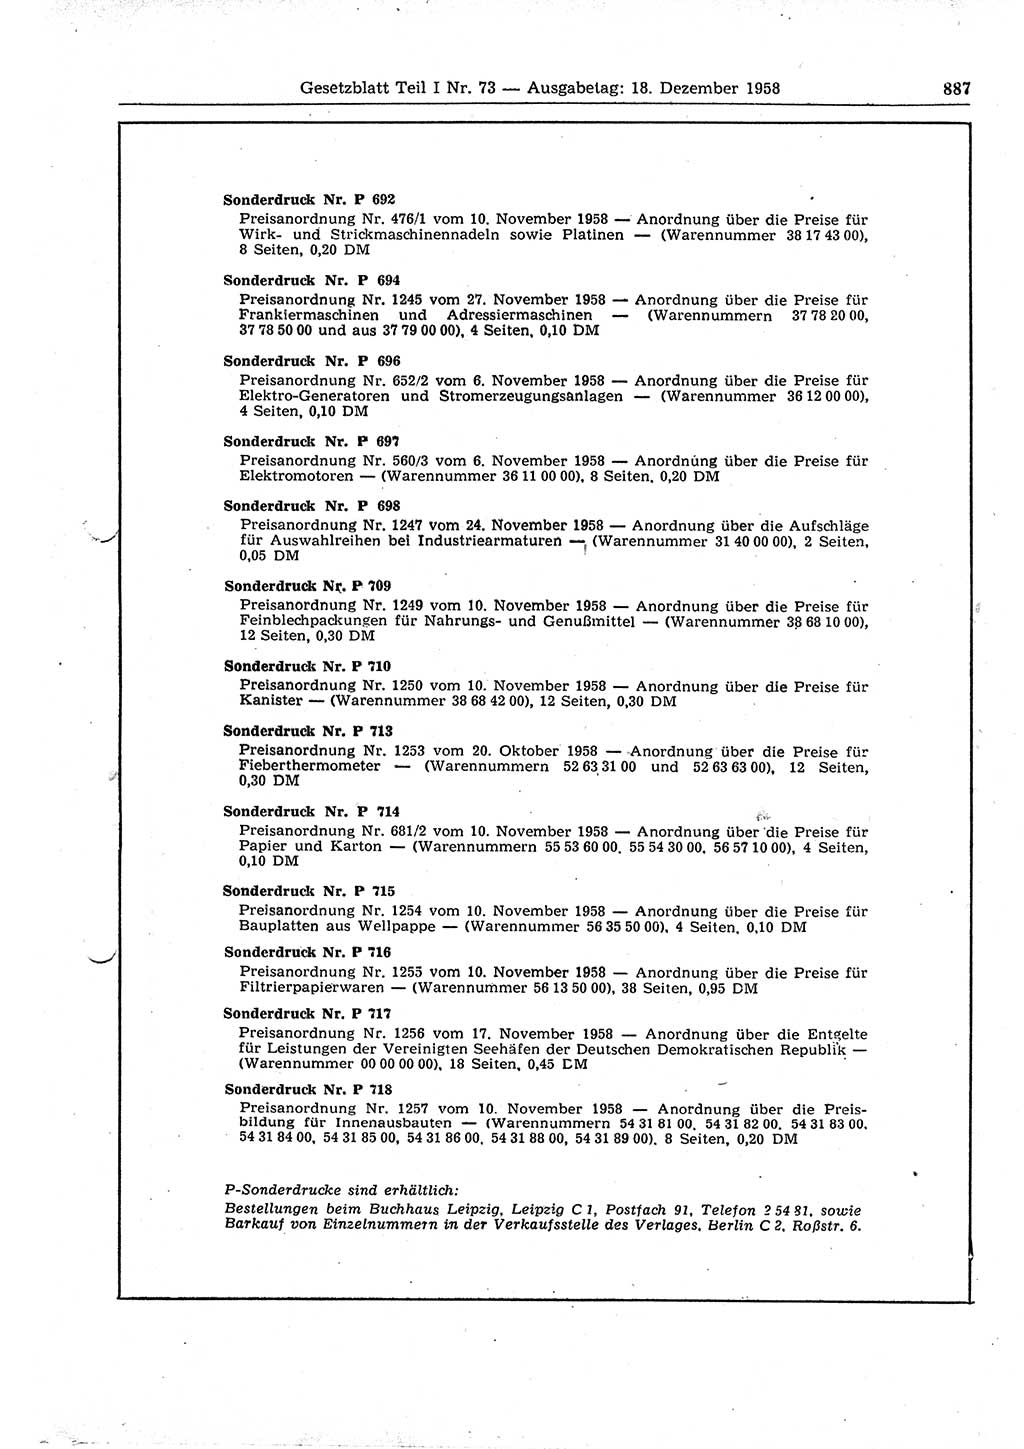 Gesetzblatt (GBl.) der Deutschen Demokratischen Republik (DDR) Teil Ⅰ 1958, Seite 887 (GBl. DDR Ⅰ 1958, S. 887)